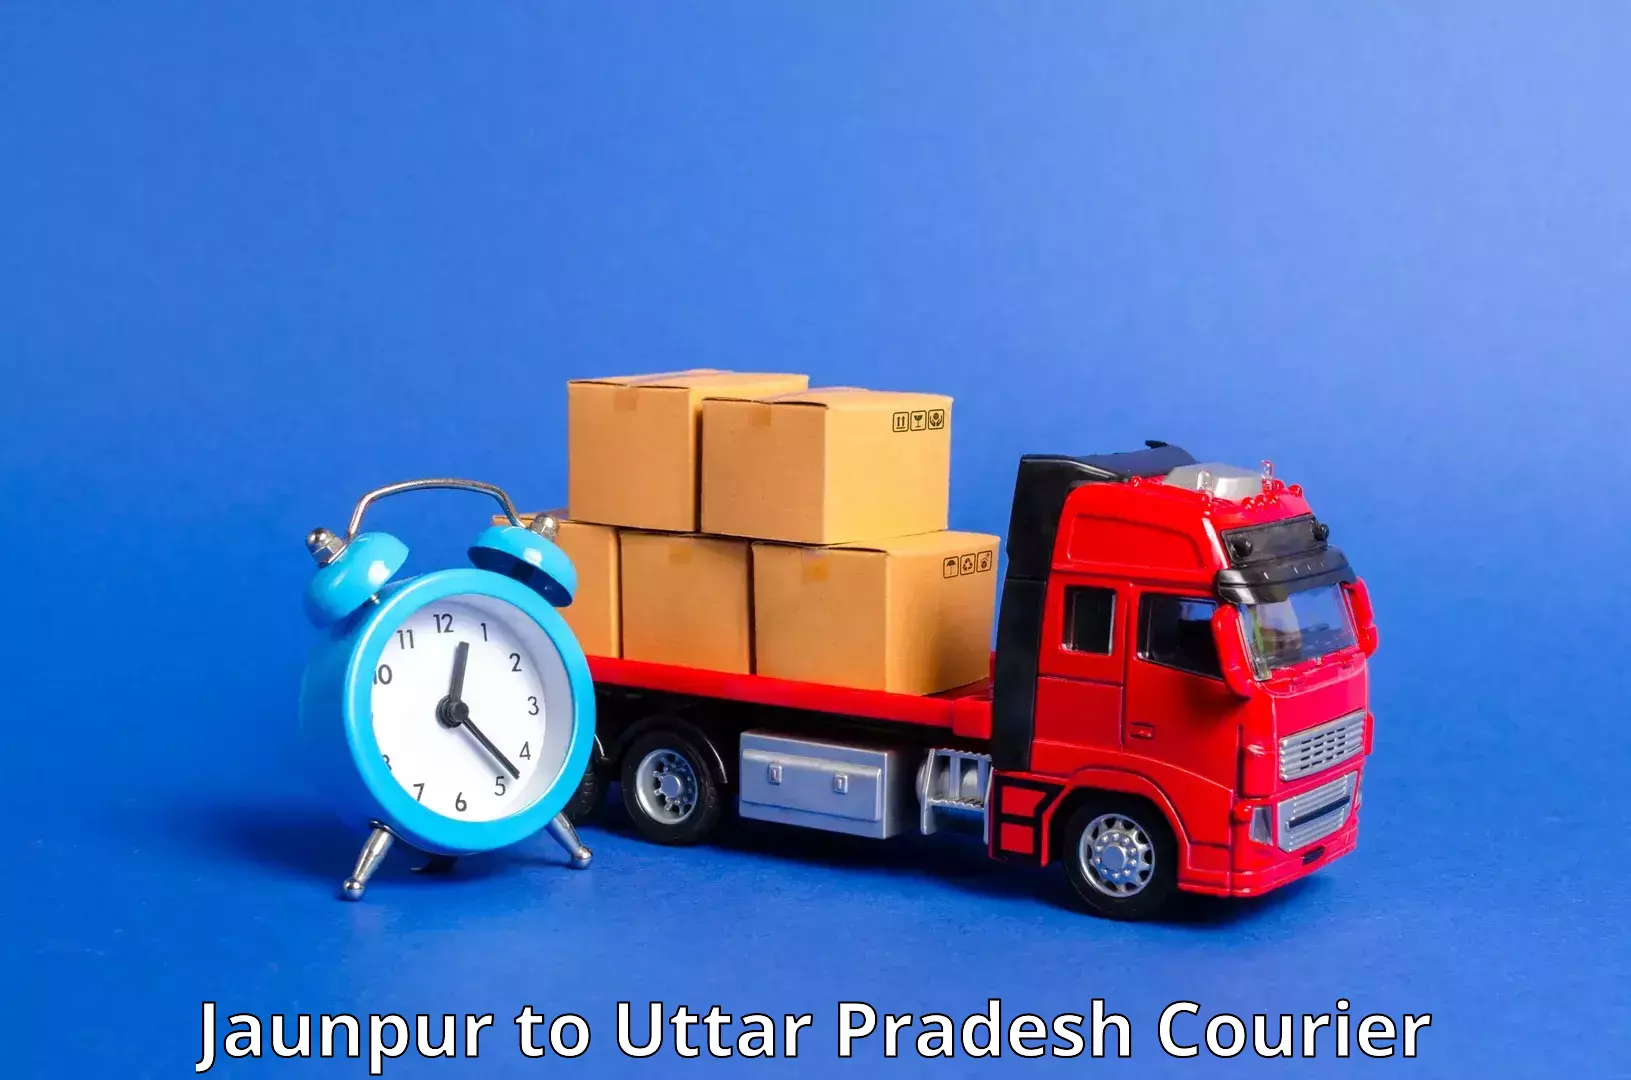 Customizable shipping options in Jaunpur to Modinagar